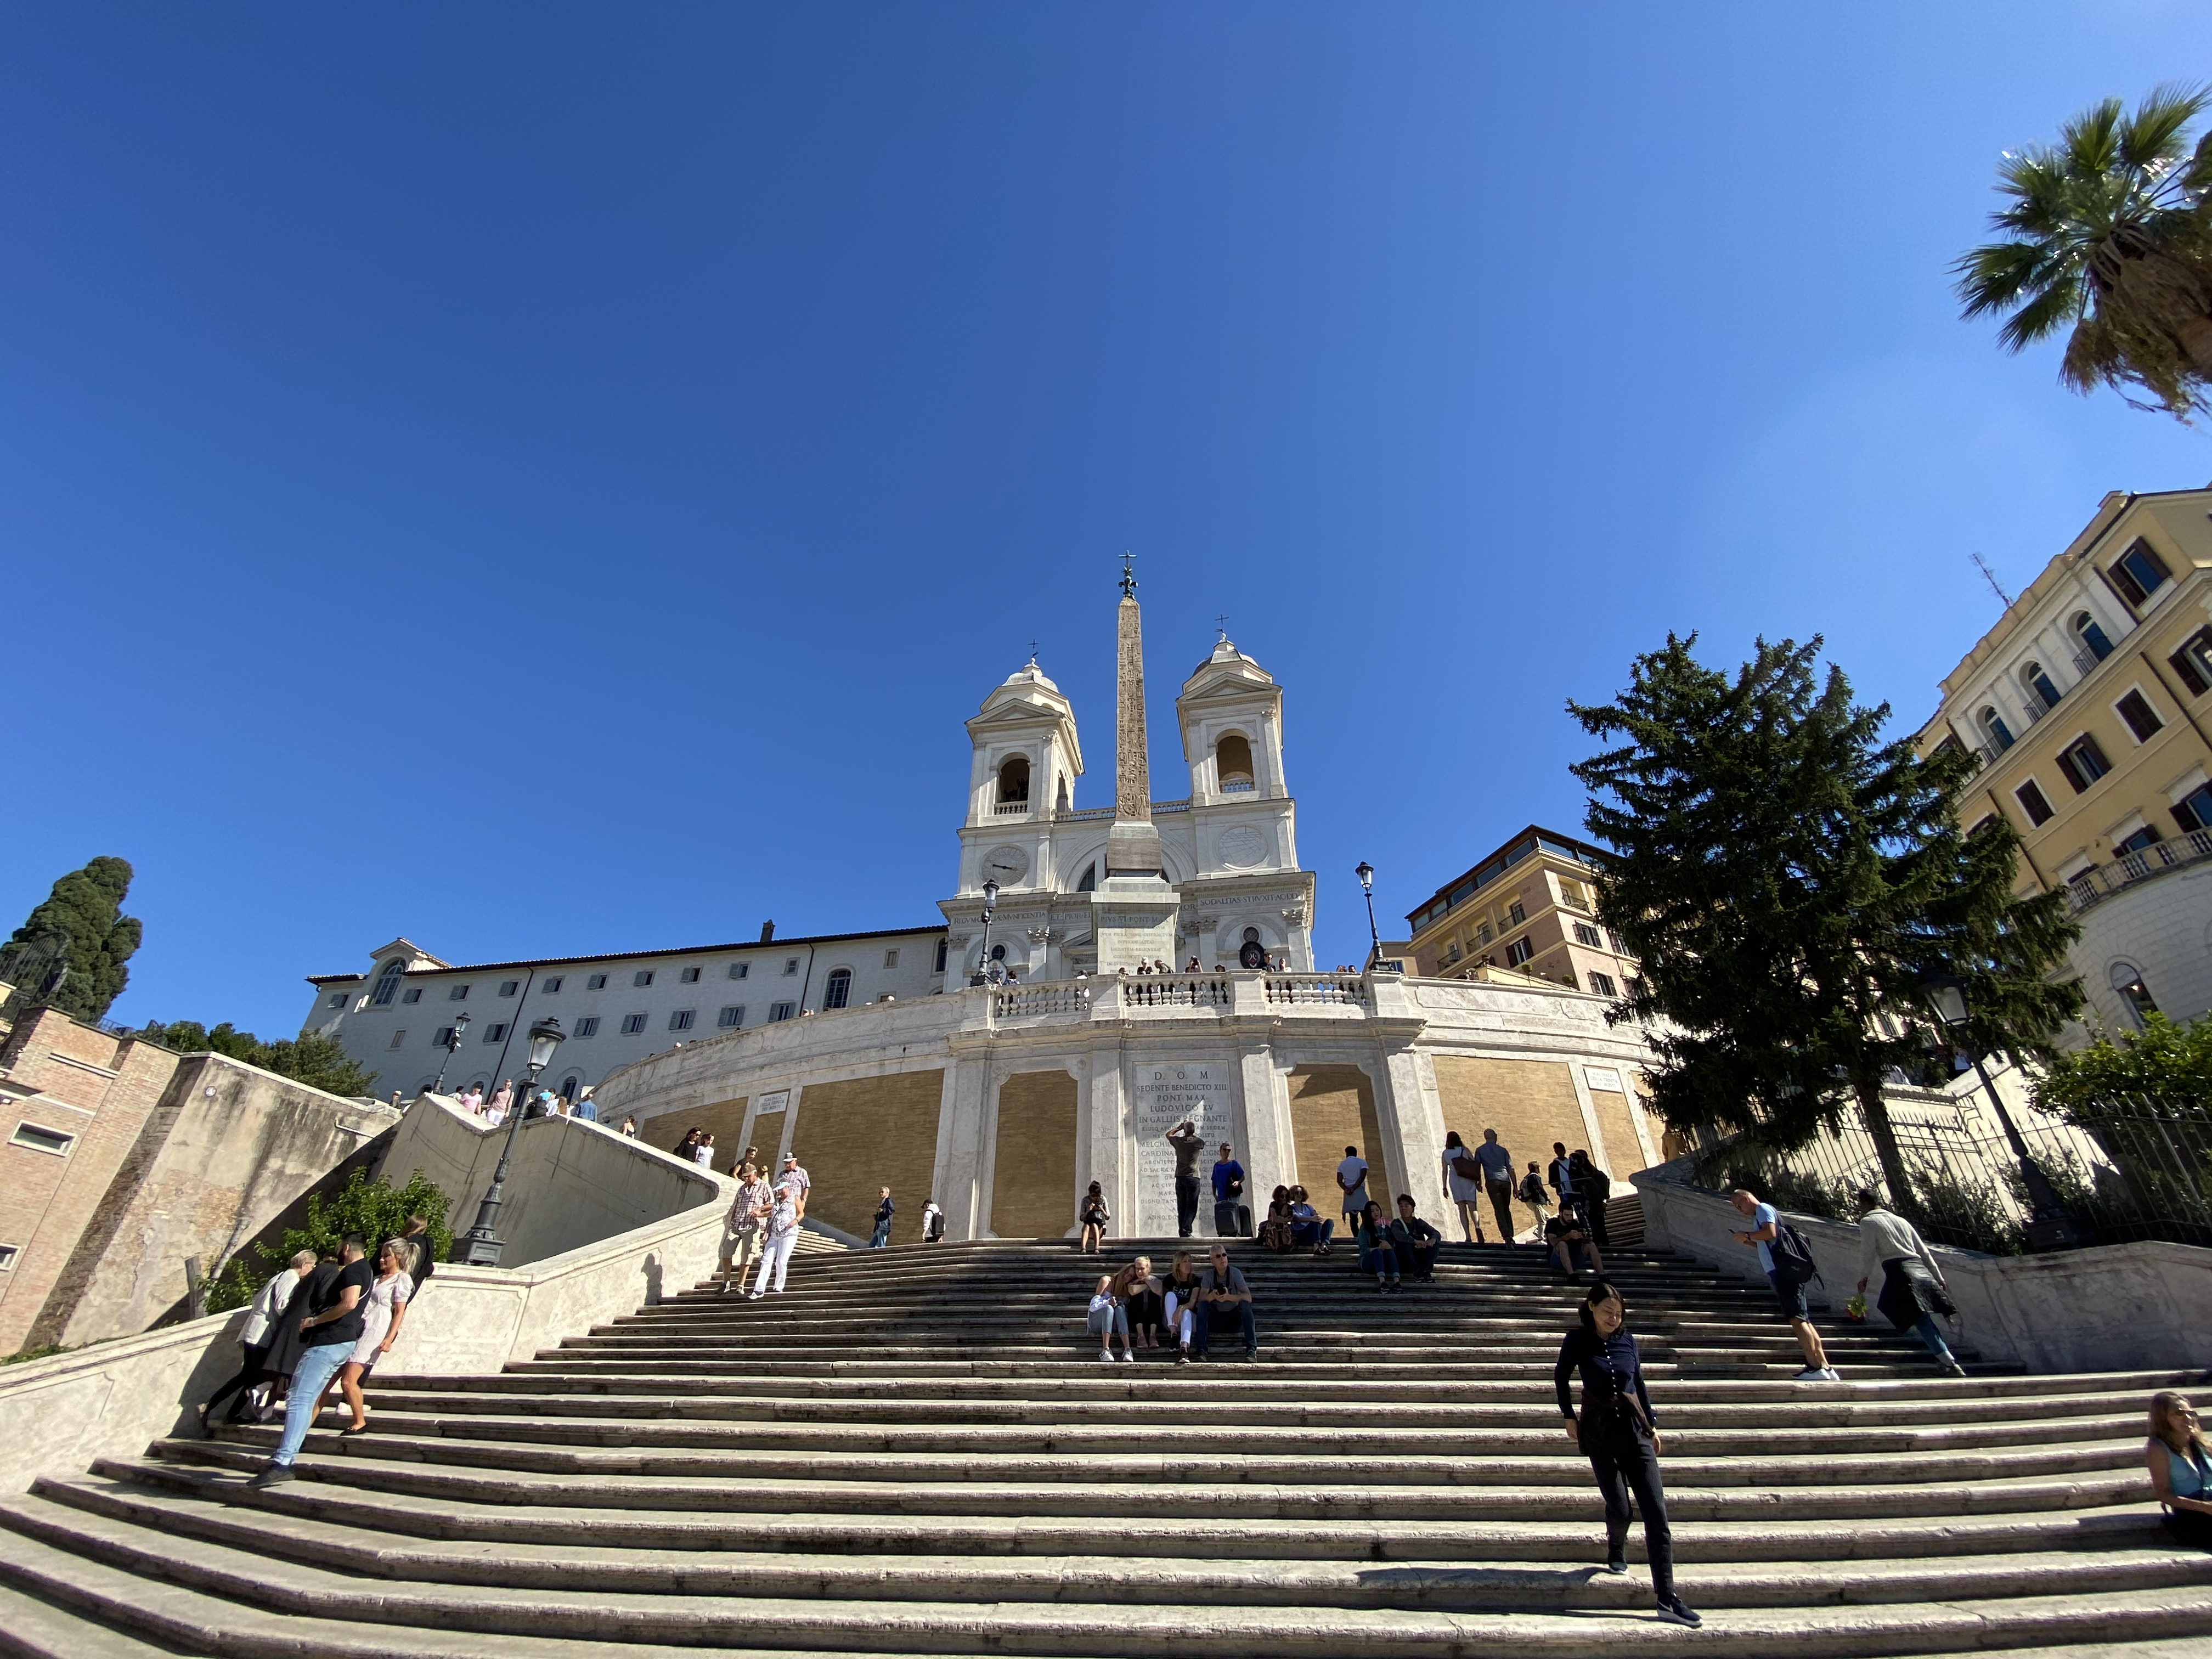 The Spanish Steps and Trinità dei Monti, ultra-wide camera.